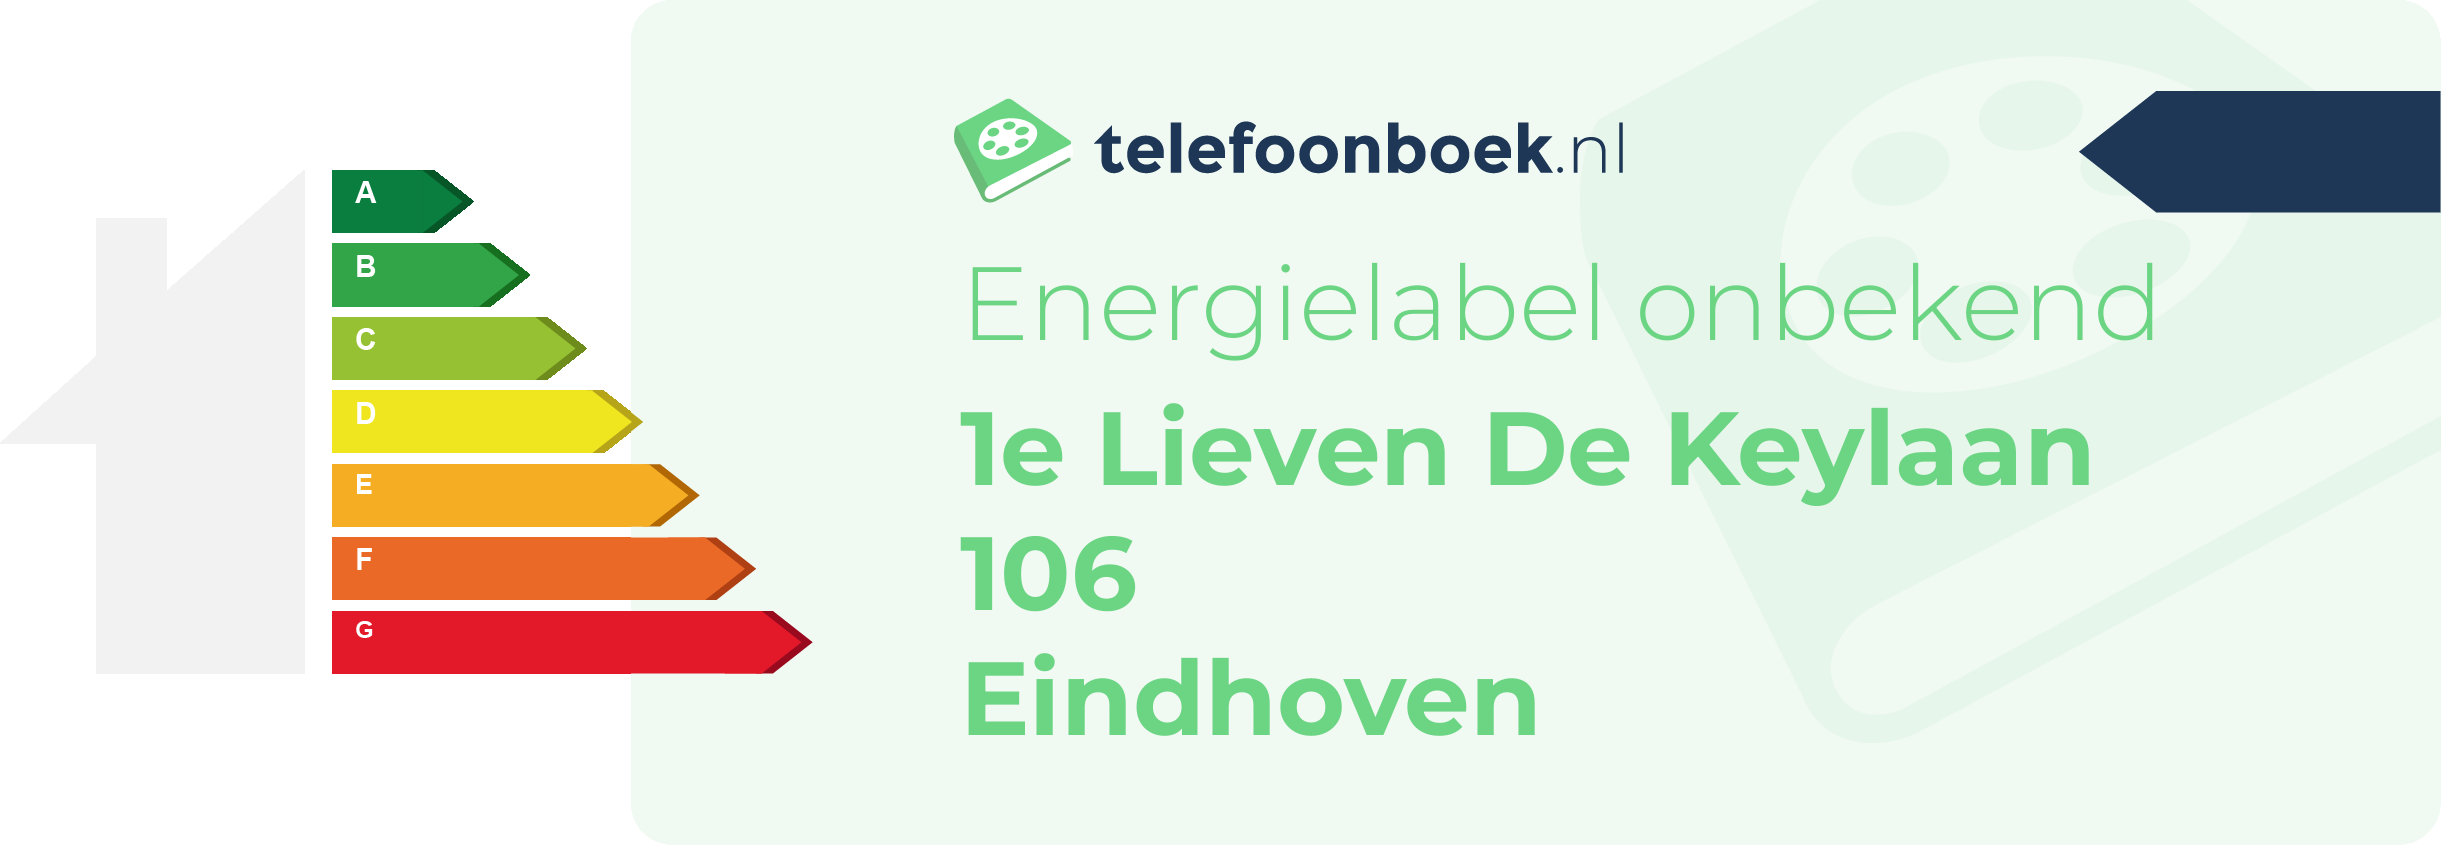 Energielabel 1e Lieven De Keylaan 106 Eindhoven